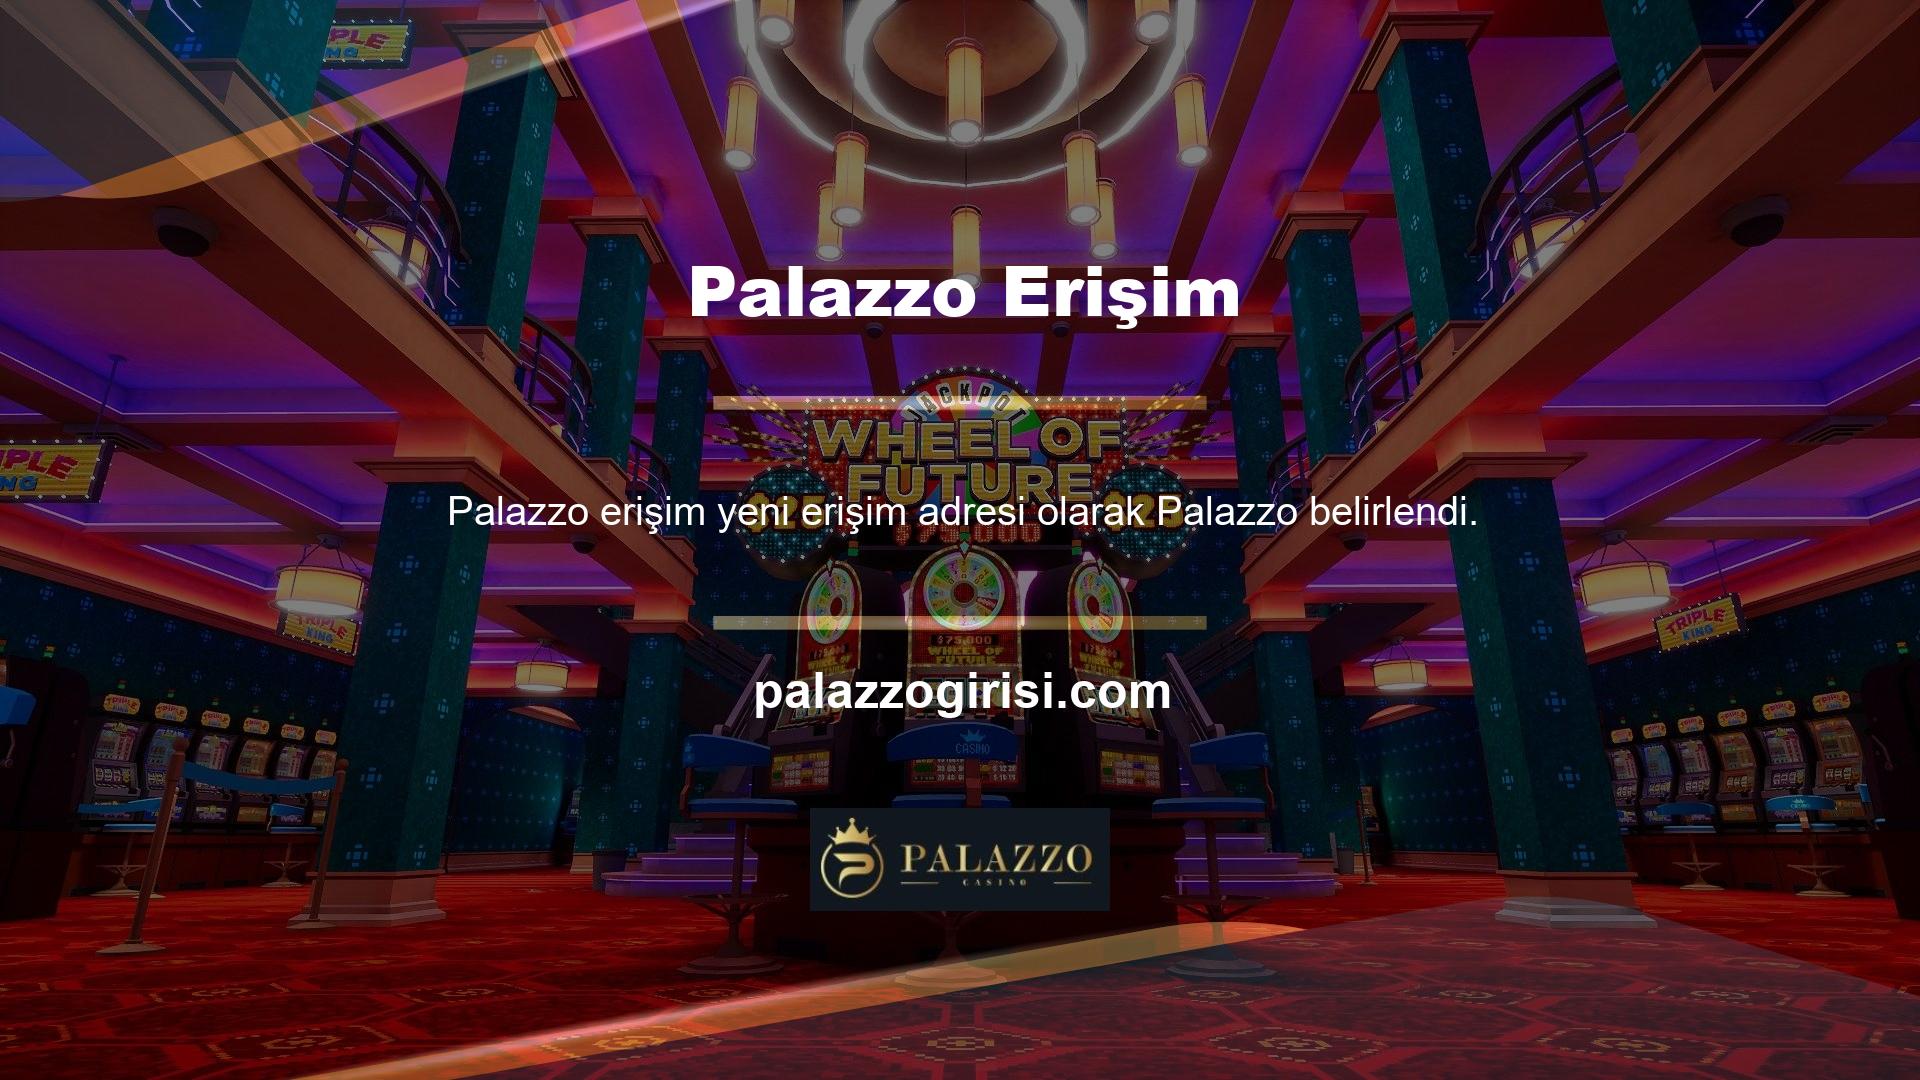 Palazzo sahte ödeme sayfası adresi yine değişti